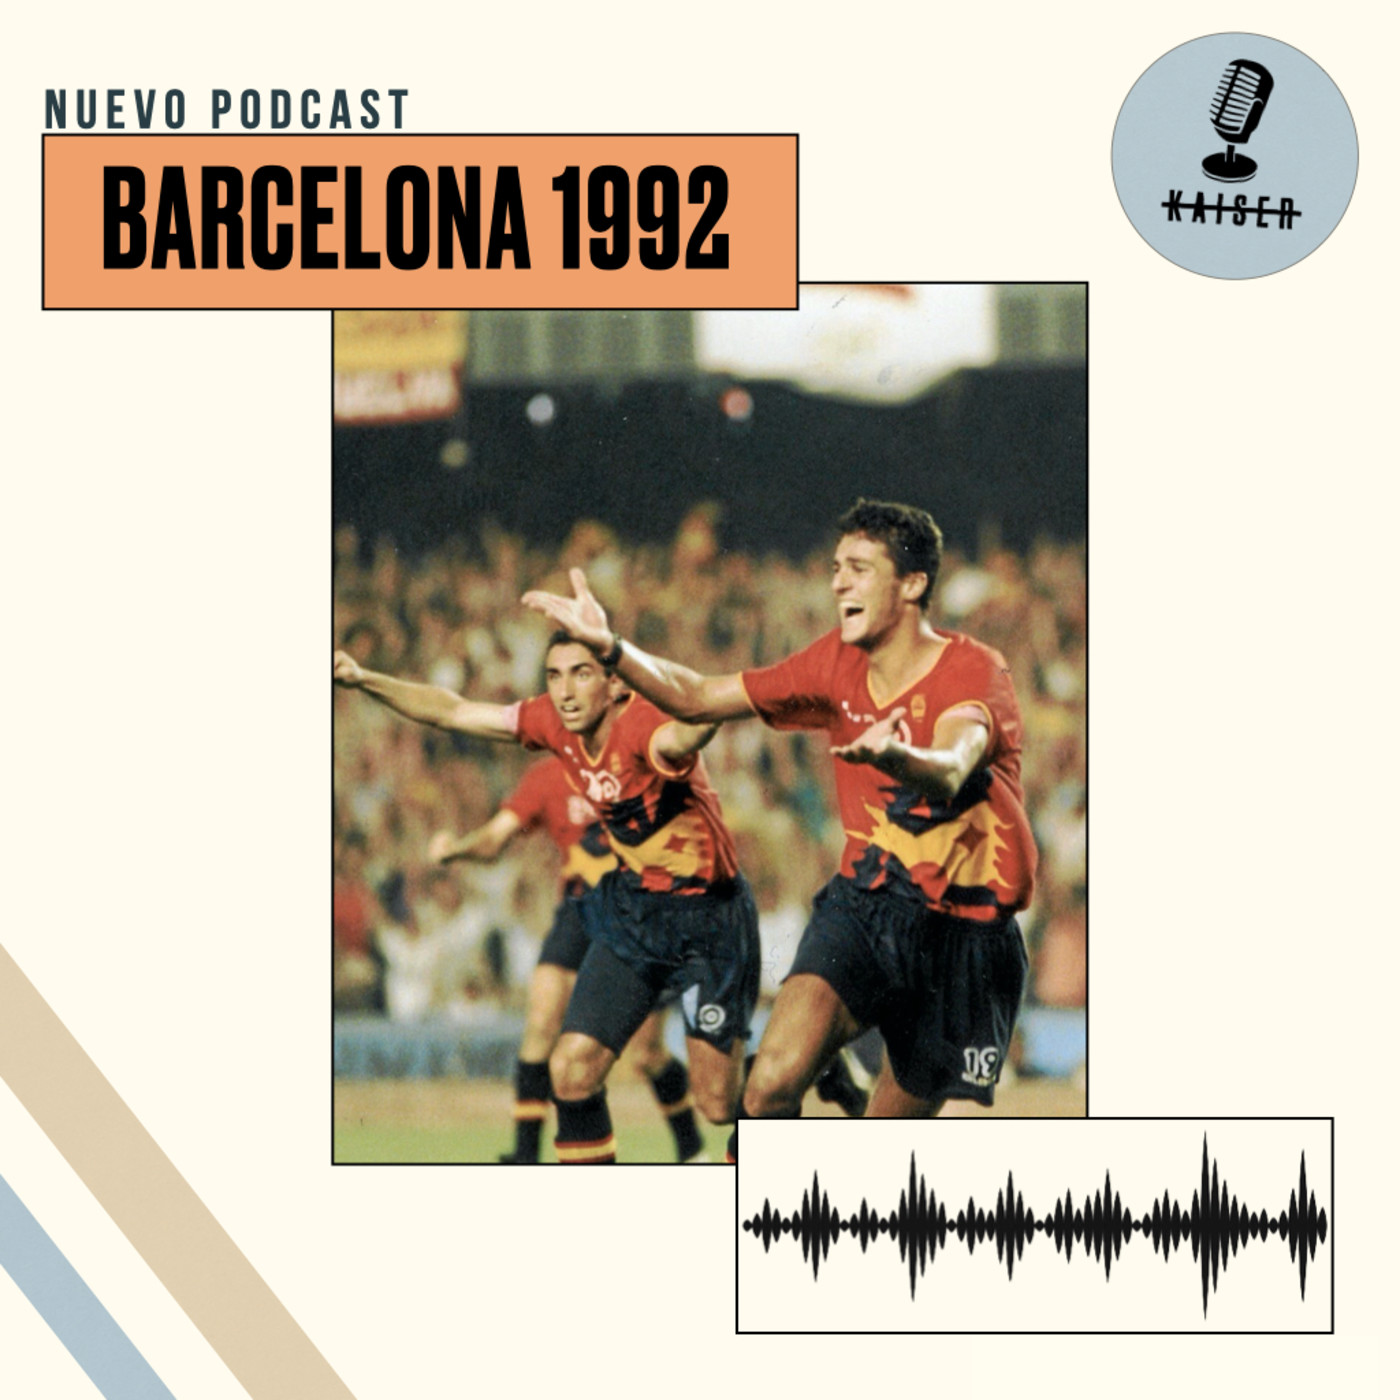 La selección de oro | España en Barcelona 1992